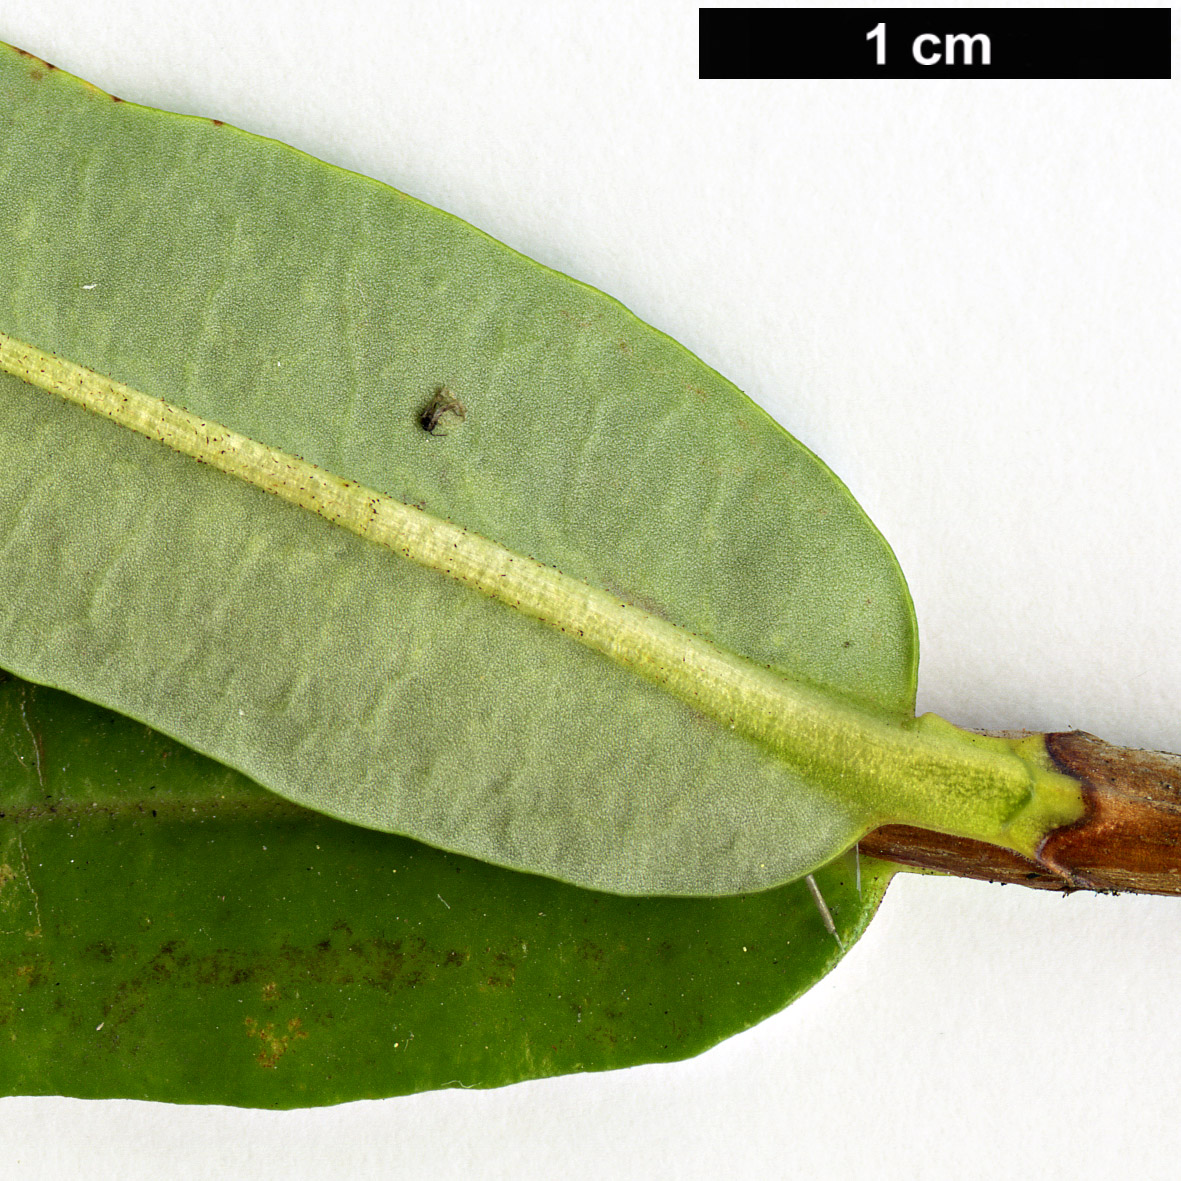 High resolution image: Family: Ericaceae - Genus: Kalmia - Taxon: polifolia